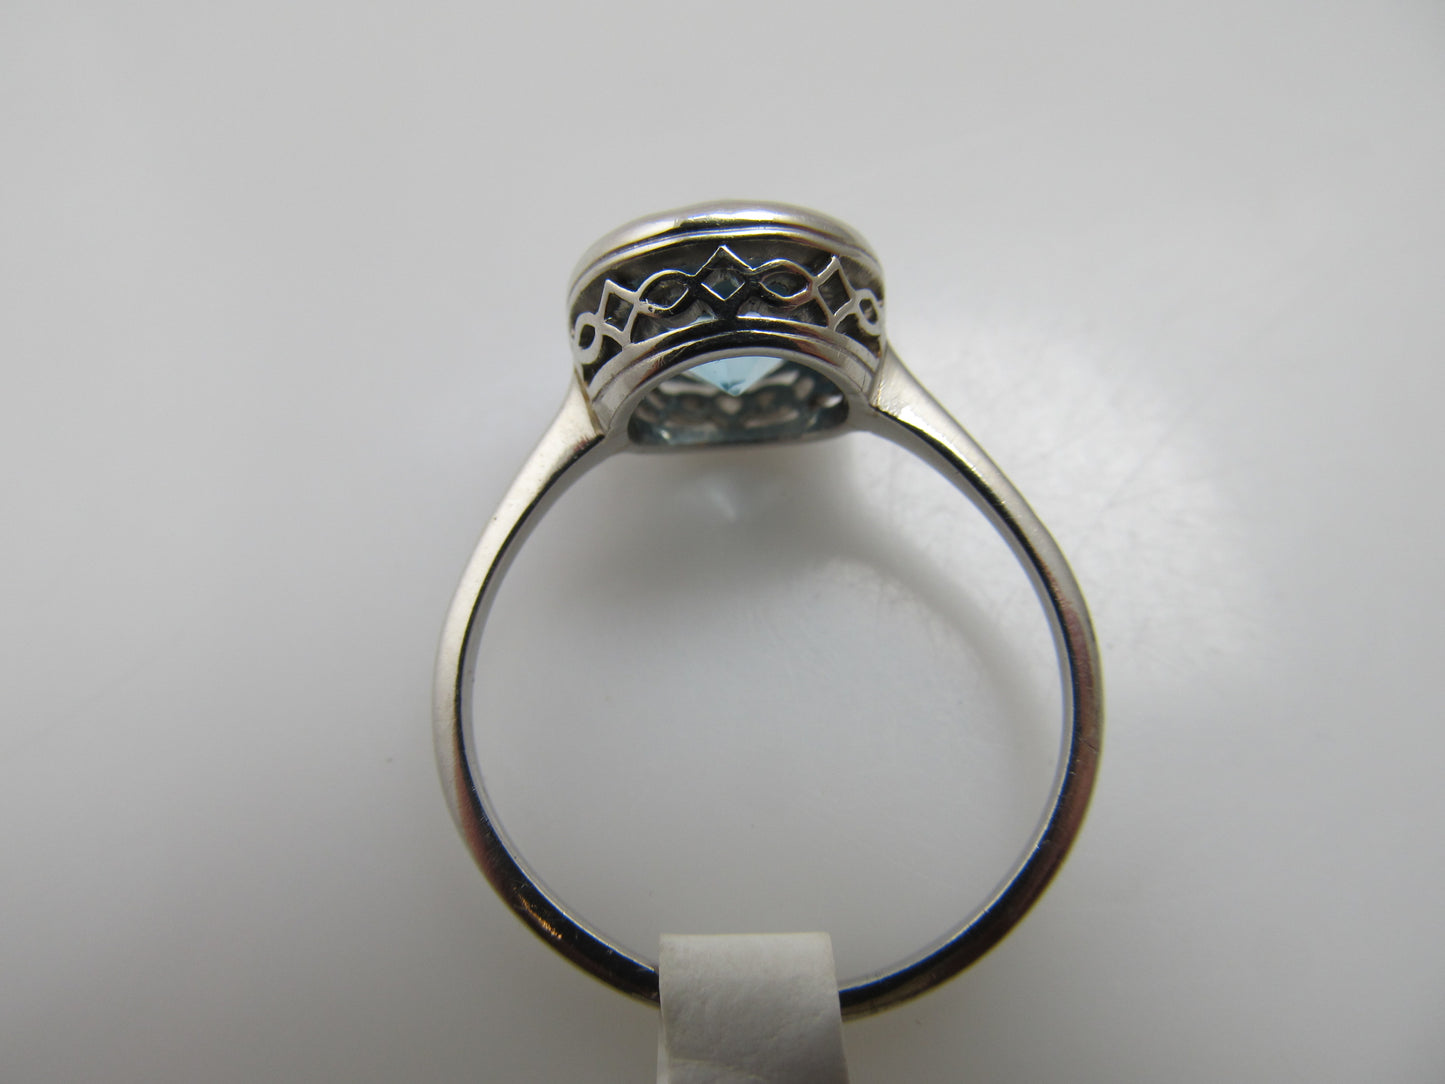 Antique platinum blue zircon ring